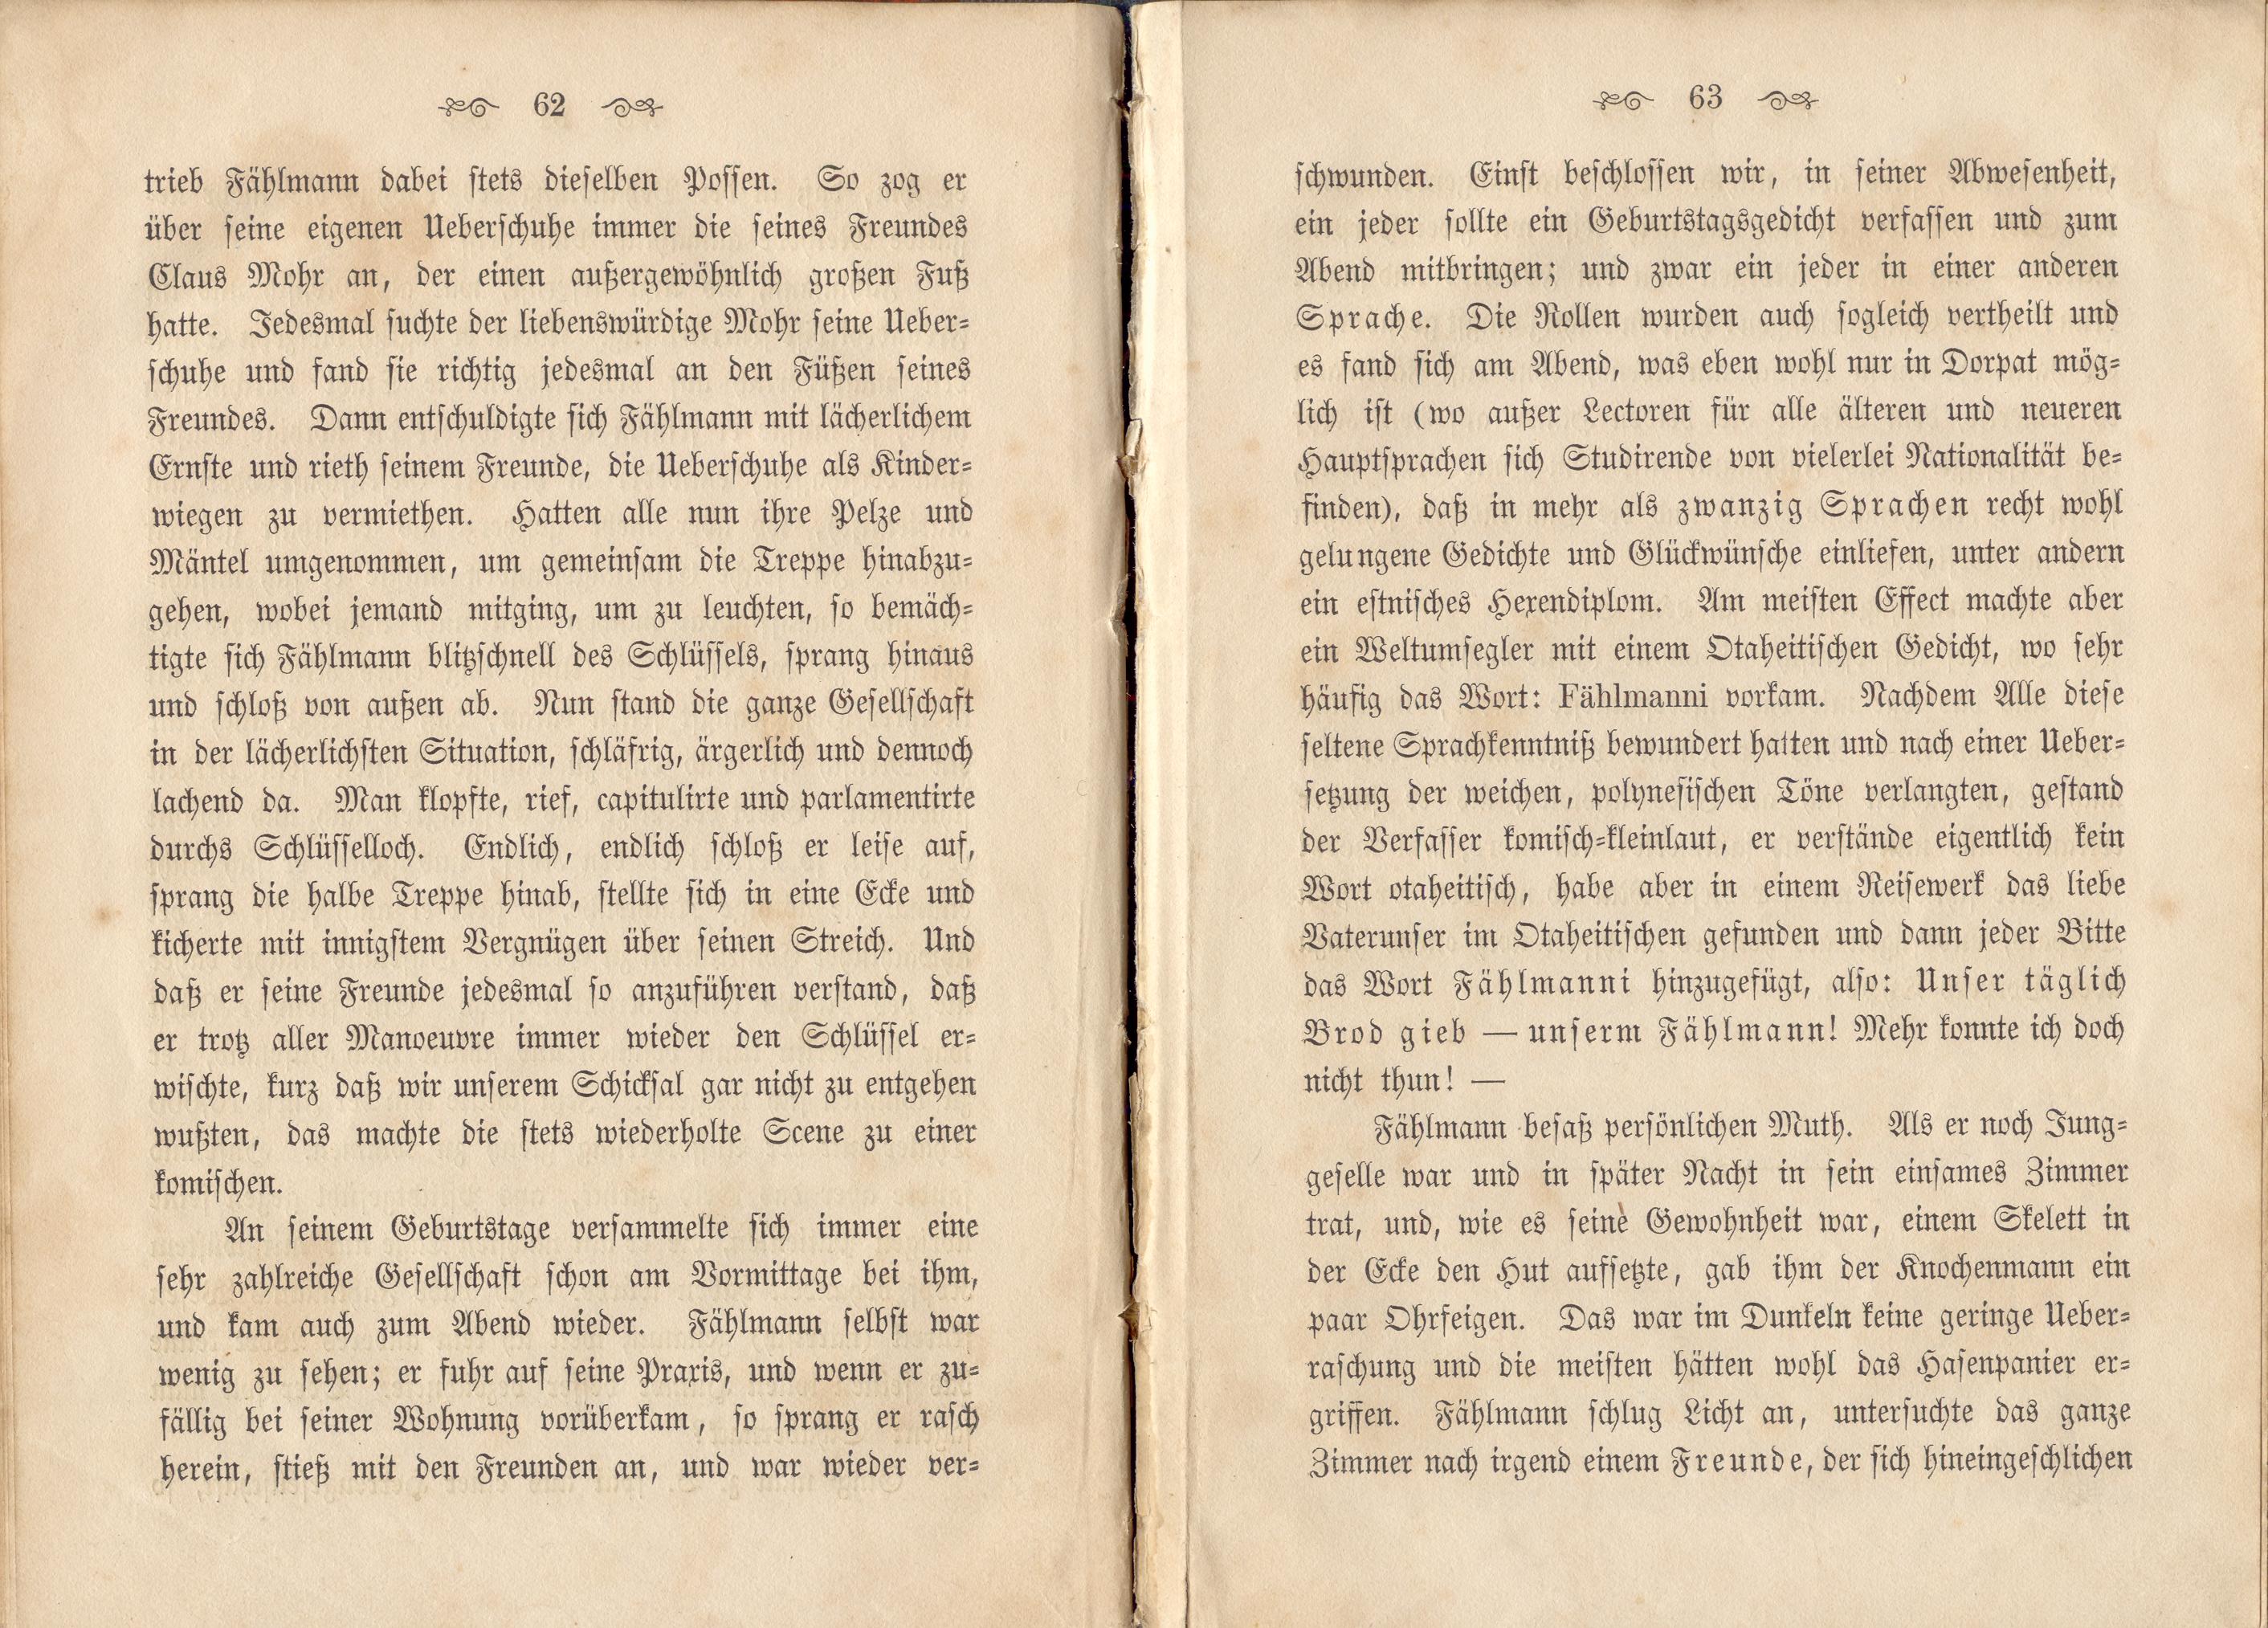 Dorpats Grössen und Typen (1868) | 34. (62-63) Haupttext